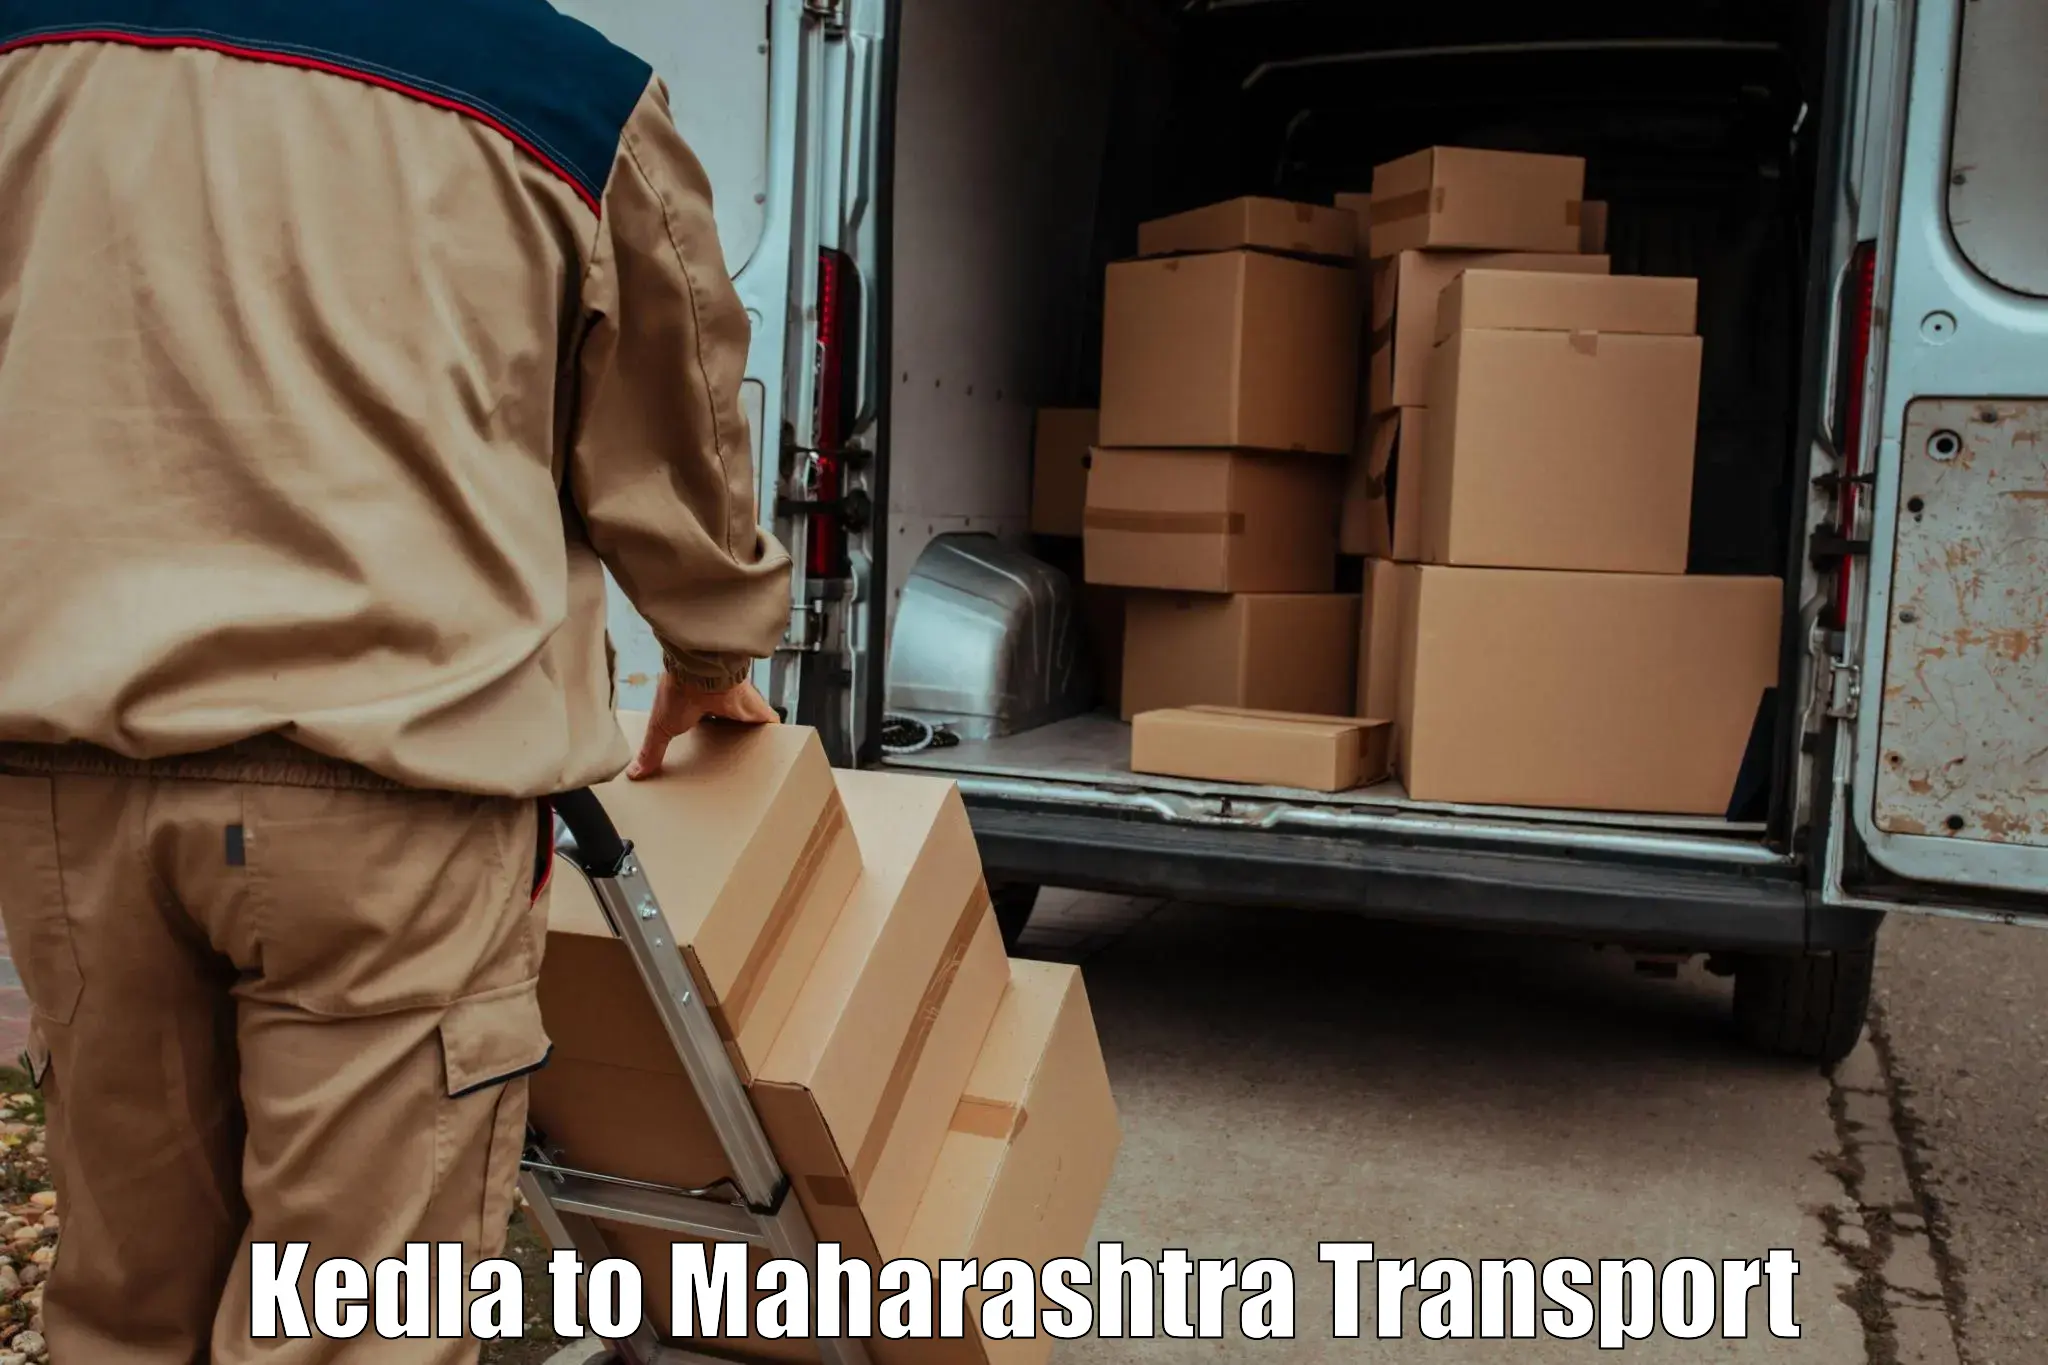 Furniture transport service Kedla to Pune